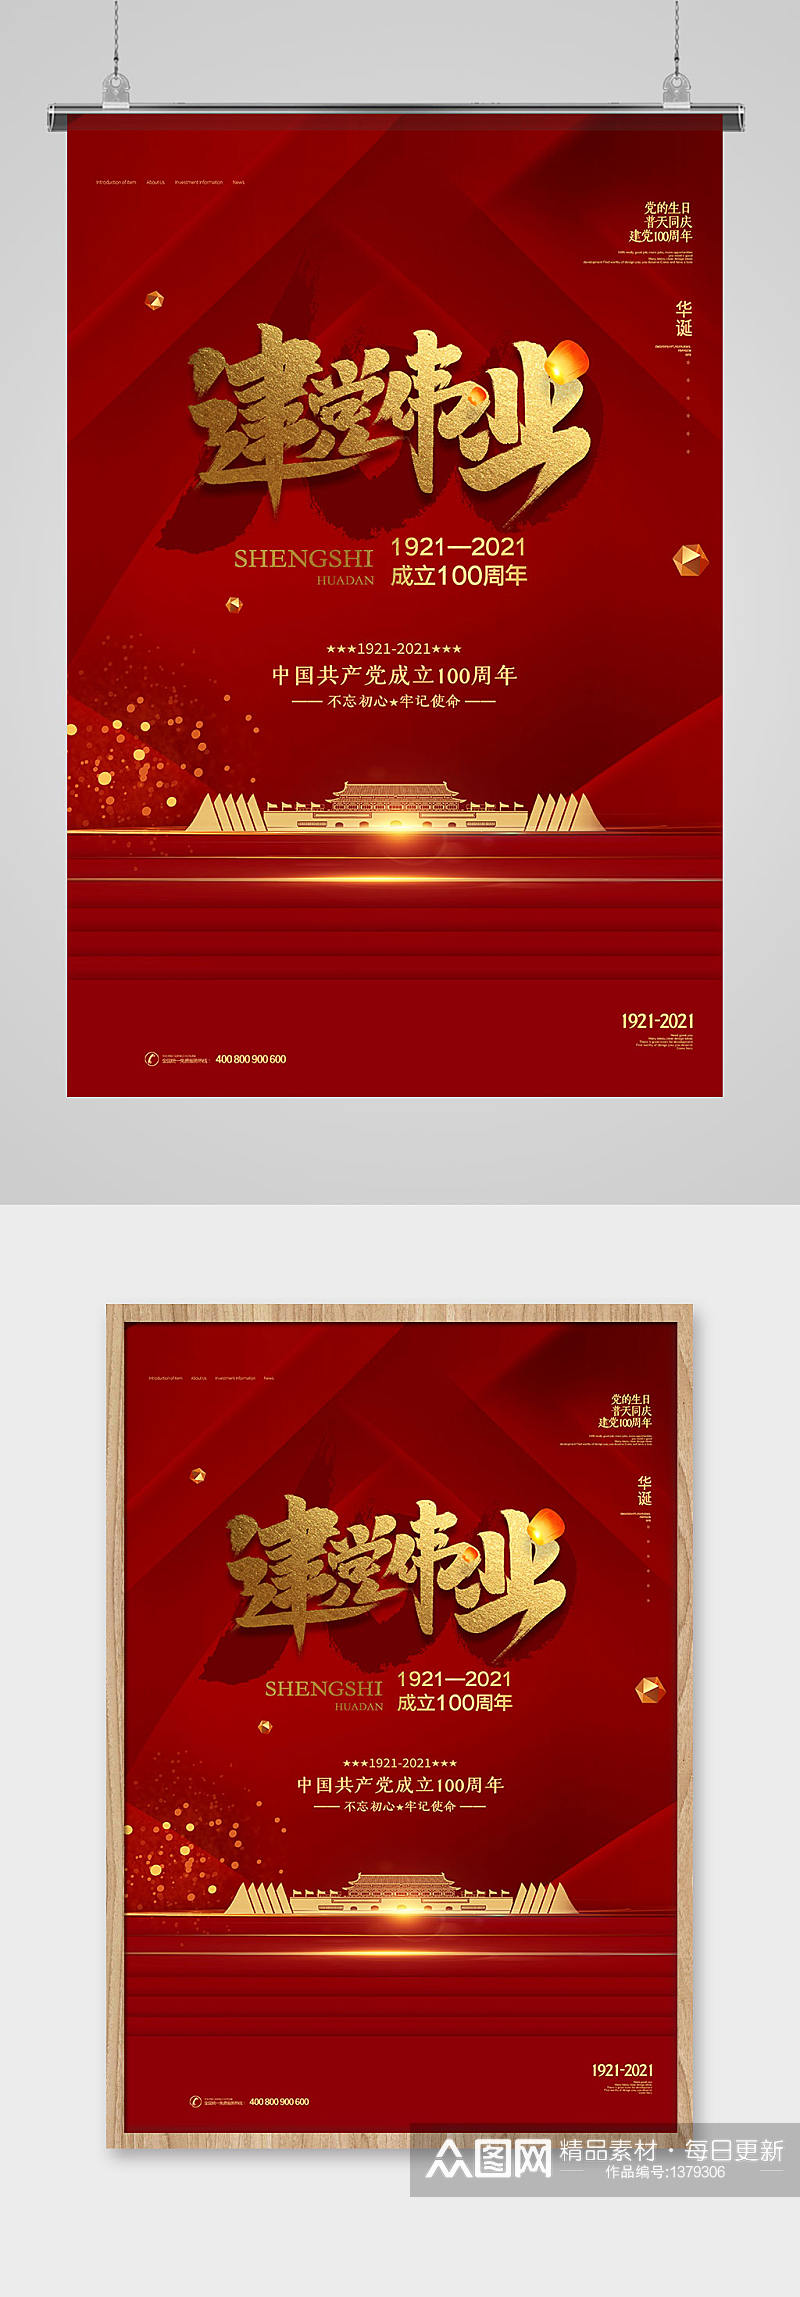 大气中国红建党100周年宣传海报素材